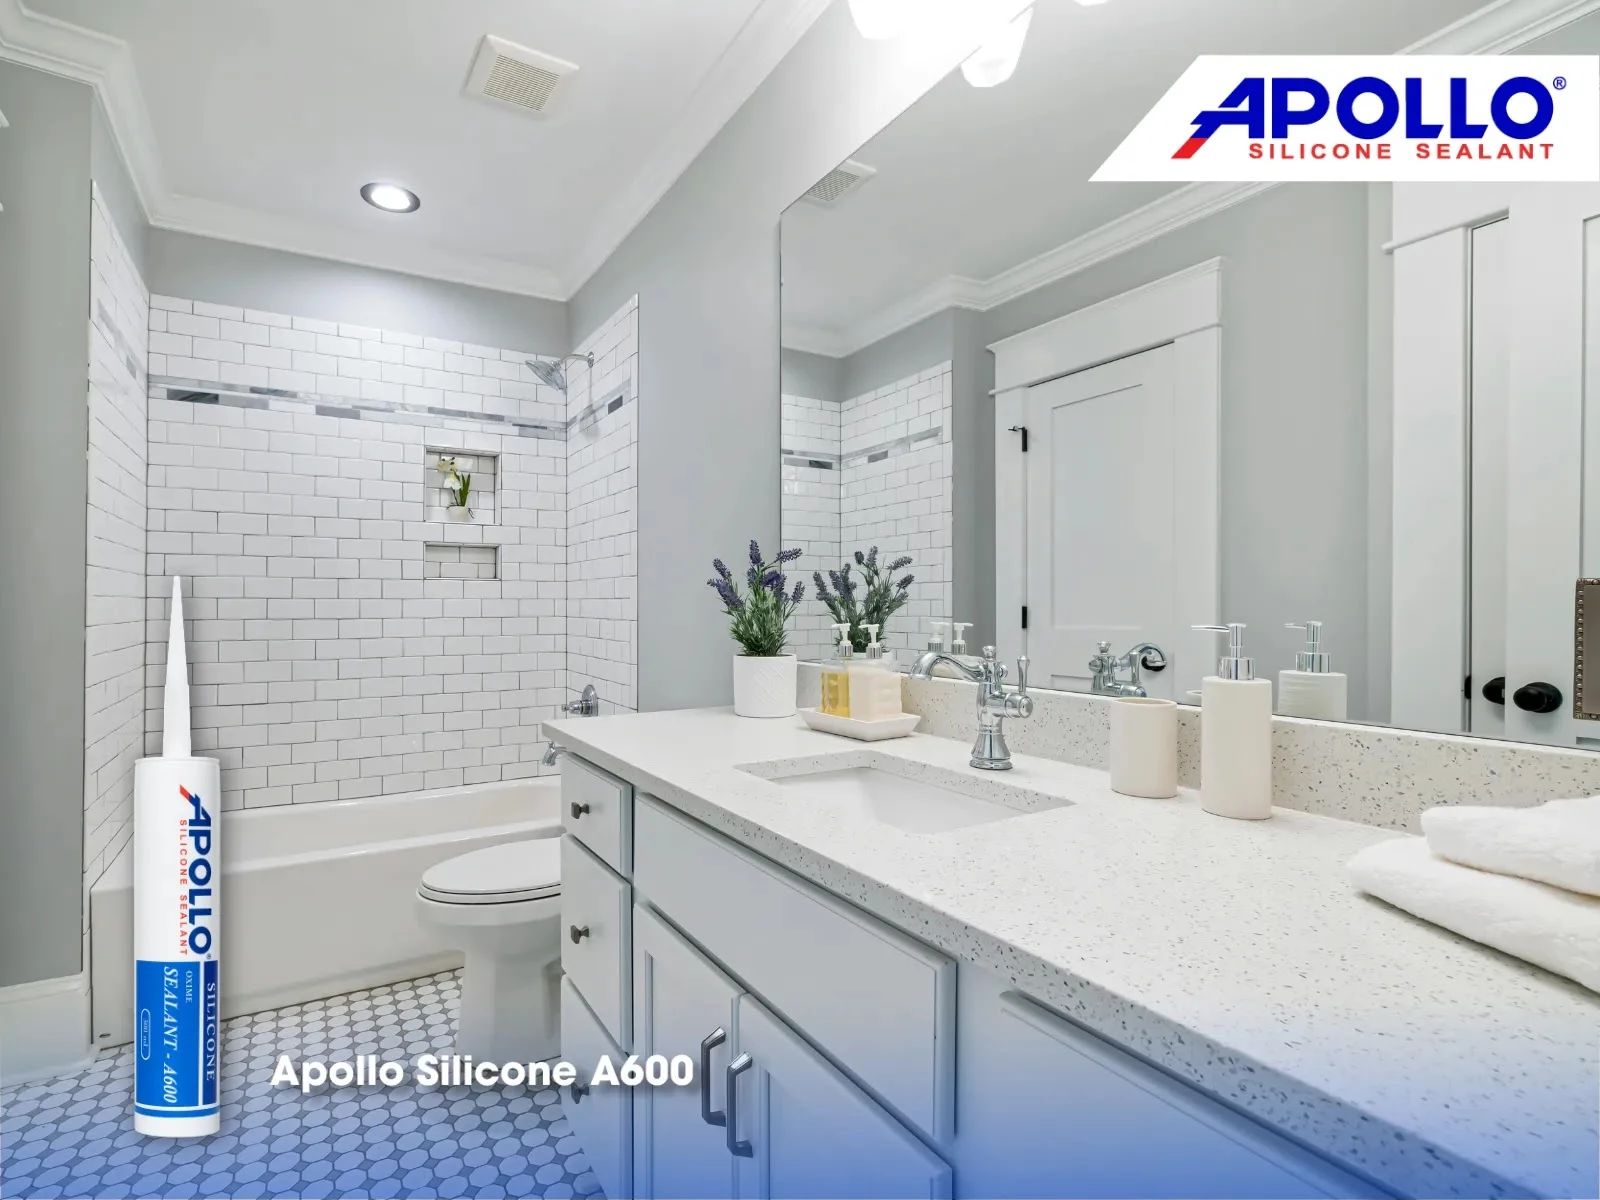 Apollo Silicone A600 sẽ giúp mối nối gương phòng tắm được đảm bảo chắc chắn, đàn hồi và chịu lực tốt